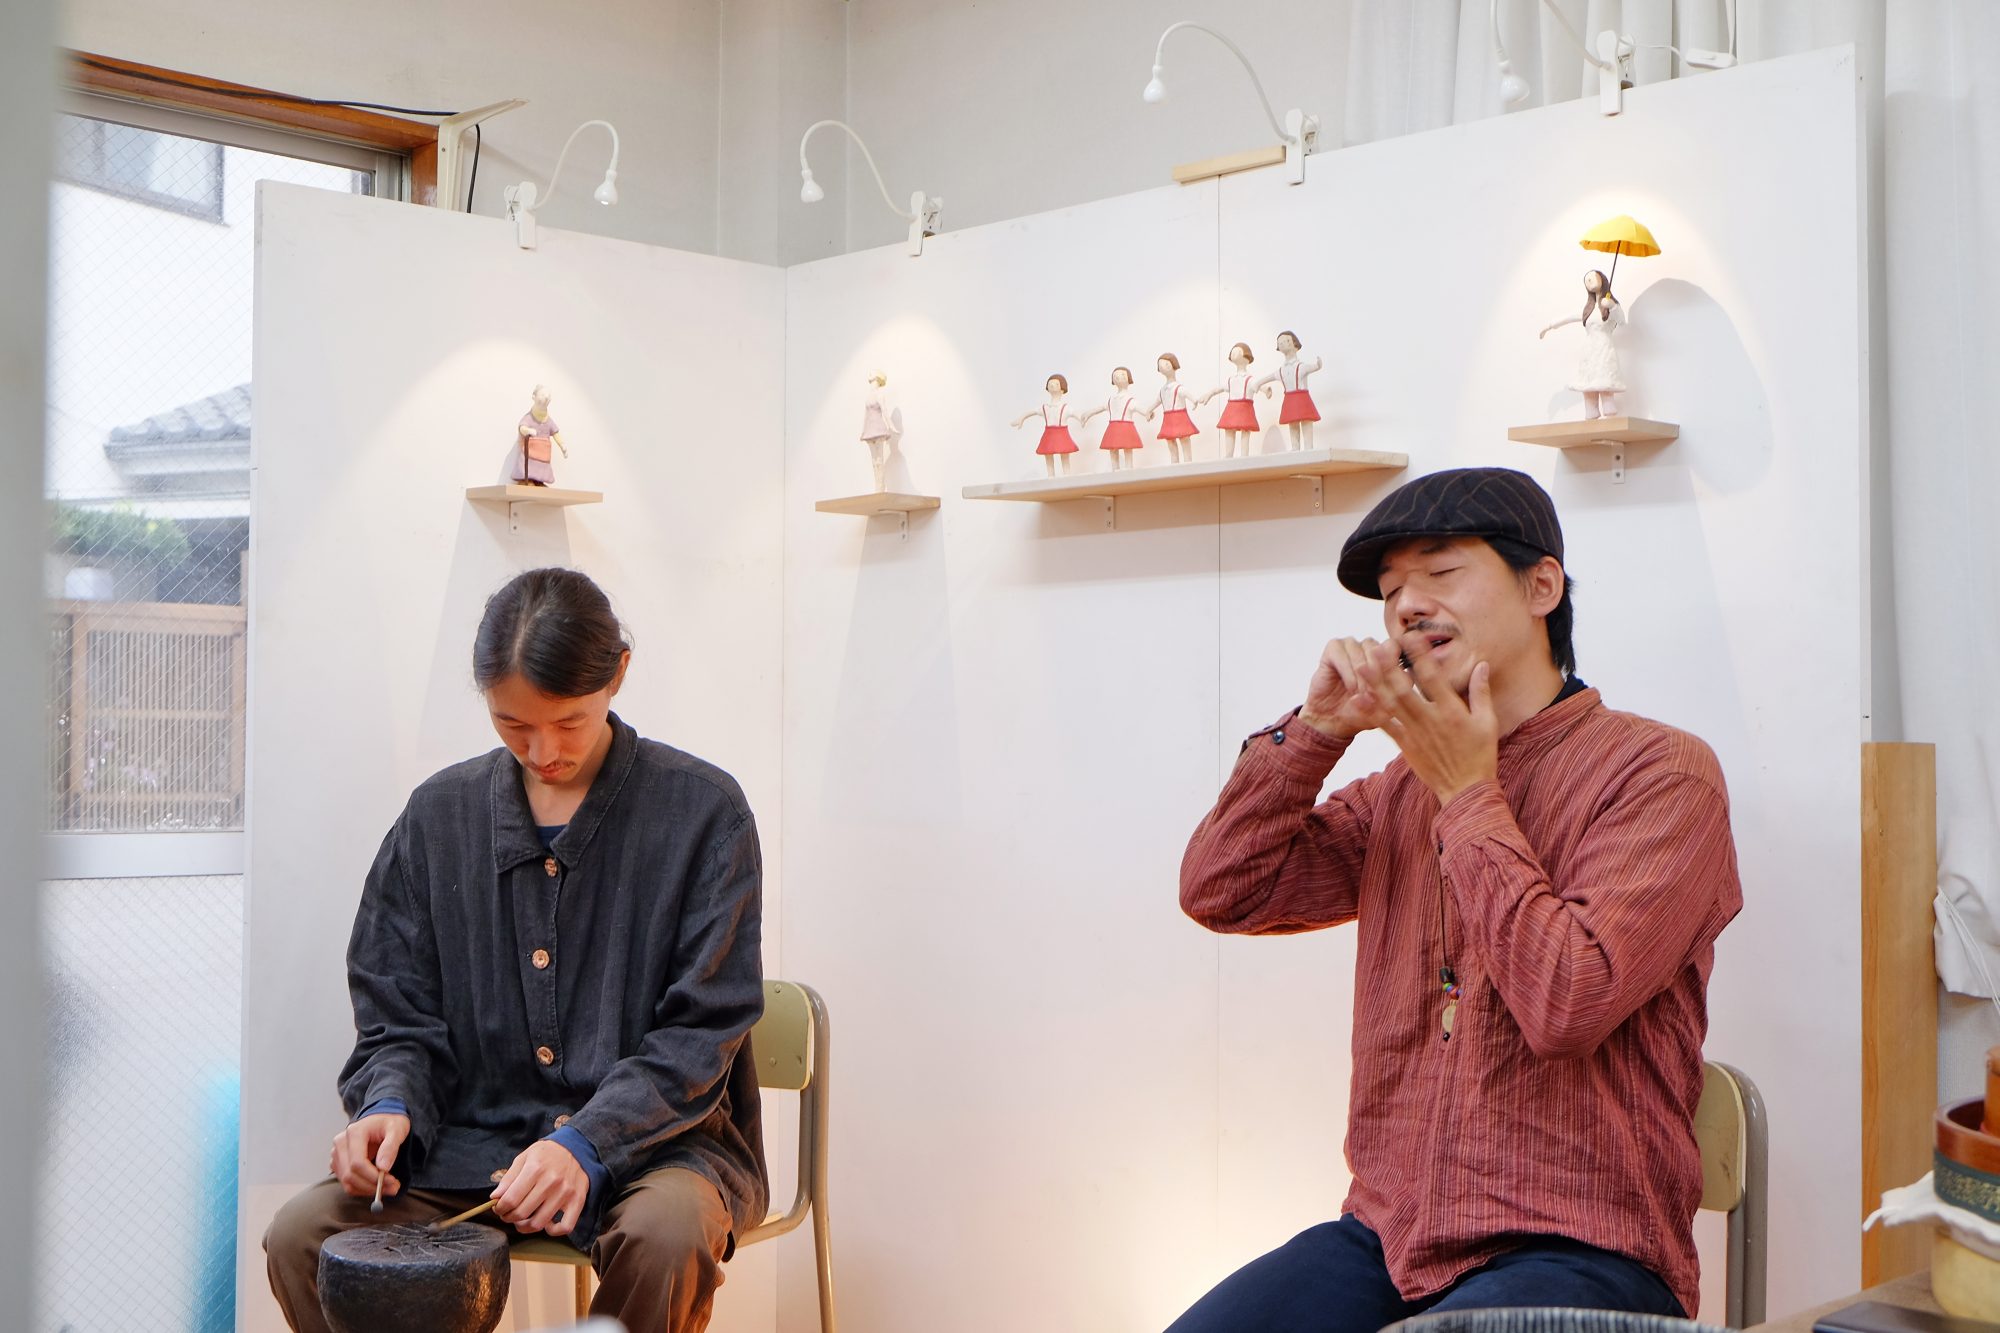 2015年の石田倉庫のアトリエ展では、作品の展示販売の他に、Acharr（久田祐三さん＋蔡怜雄さん）による打楽器ライブを開催。陶器の太鼓は、佳世さんが焼いたもの。